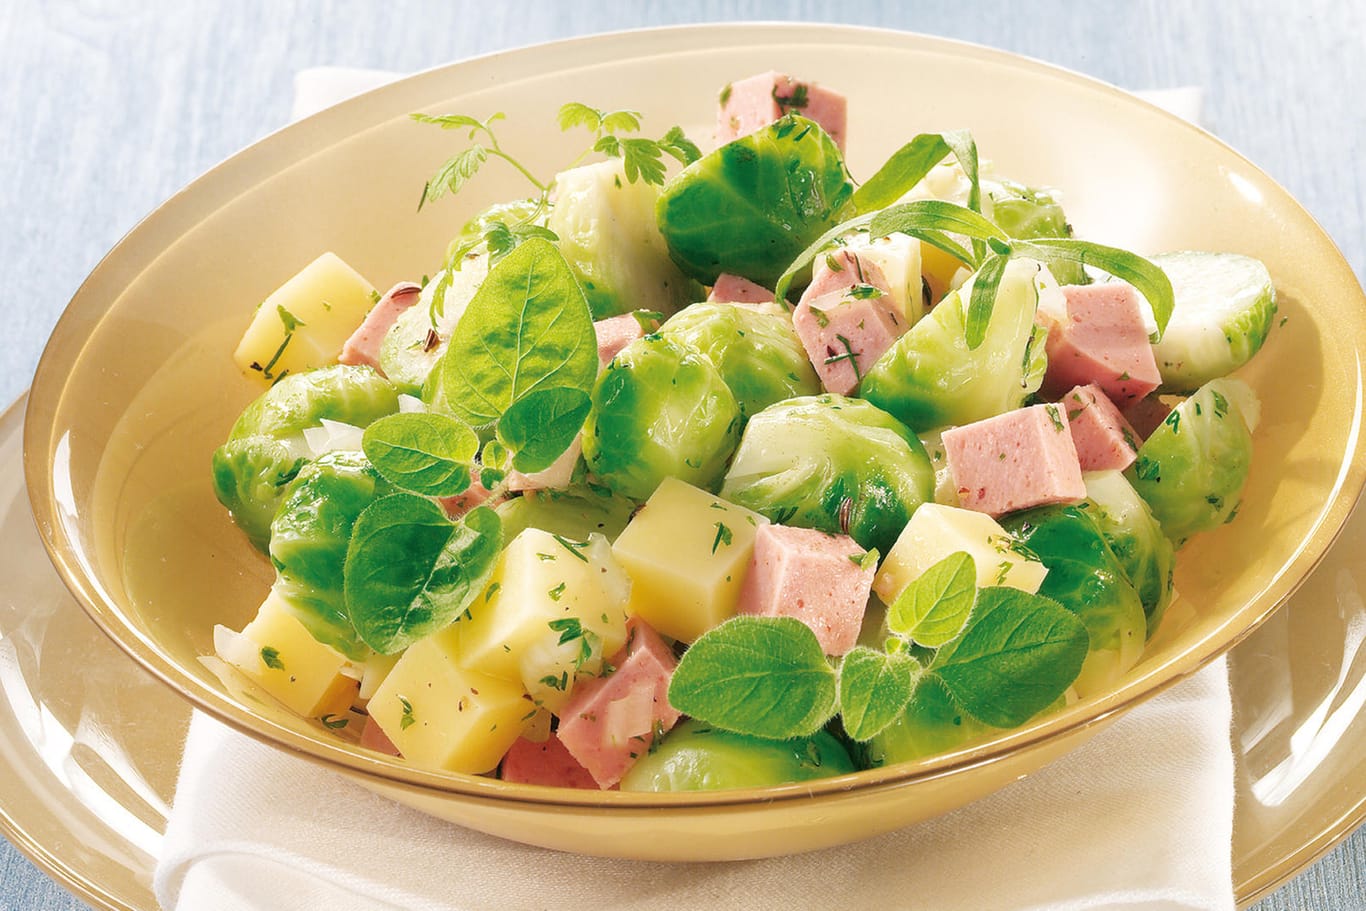 Rosenkohlsalat: Mit Käse und Fleischwurst harmoniert das Gemüse sehr gut.